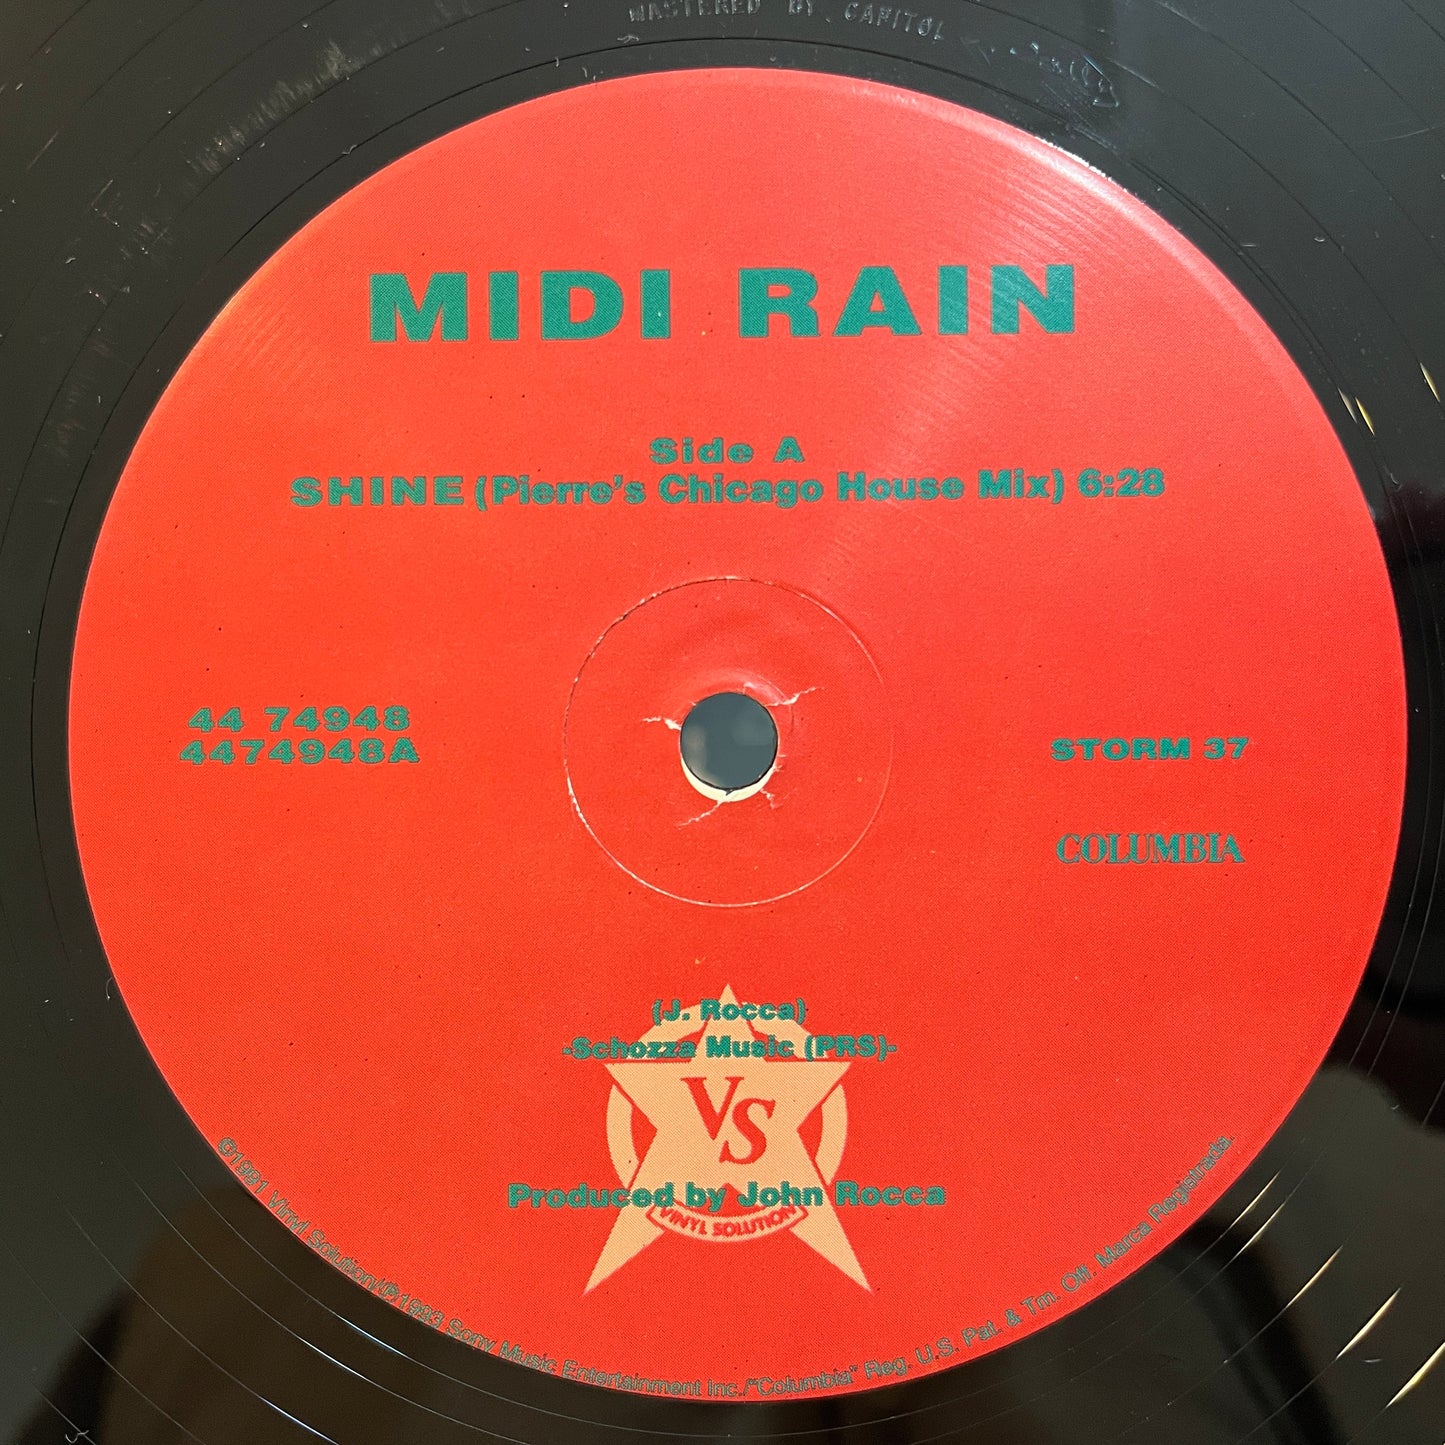 Midi Rain – Shine